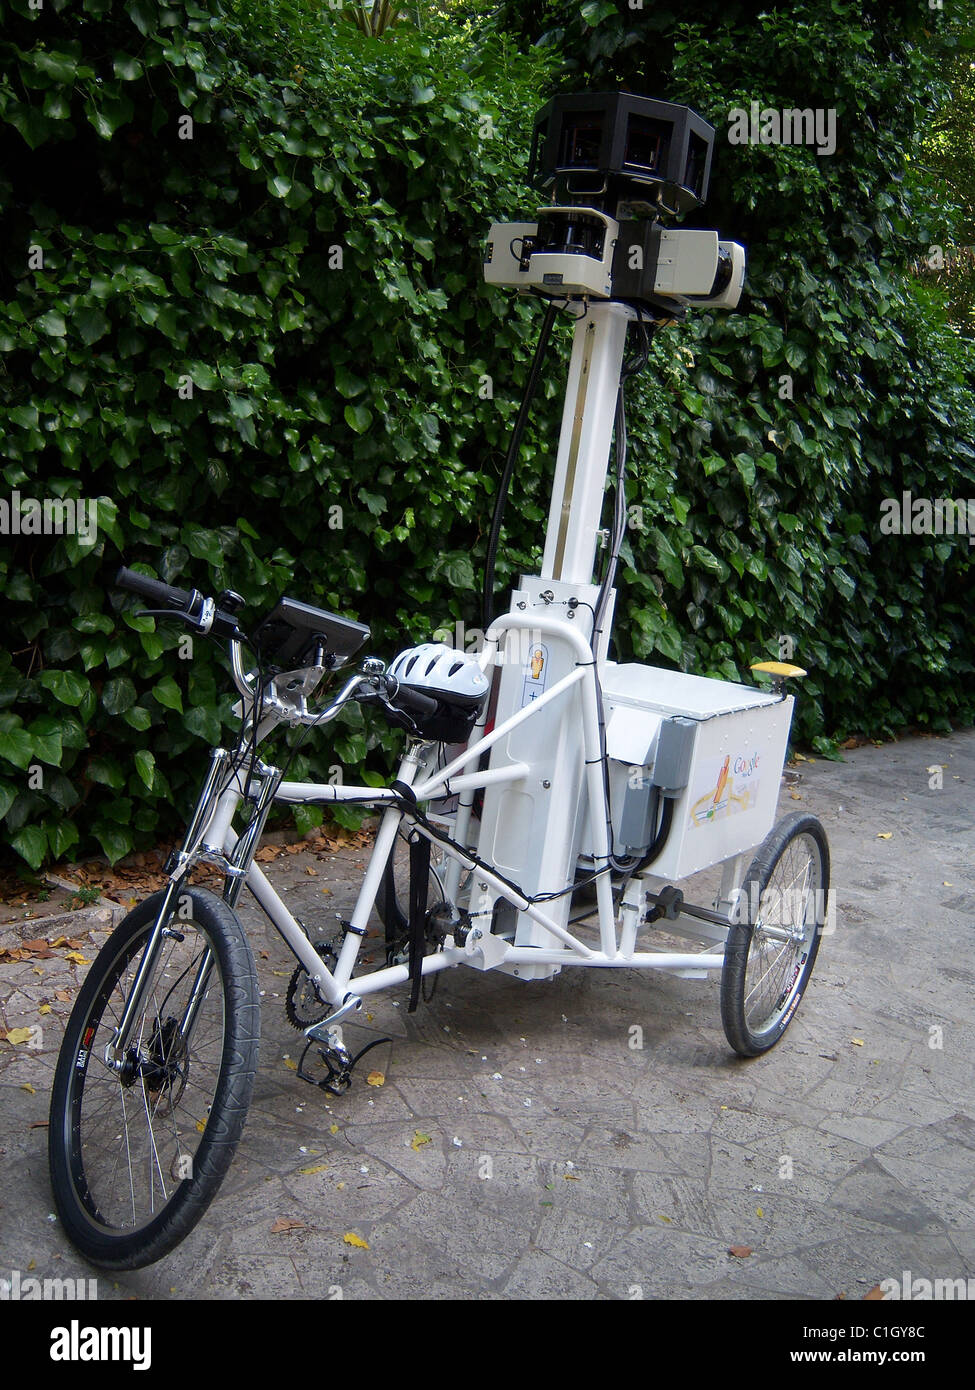 Tricycle will immagini e fotografie stock ad alta risoluzione - Alamy